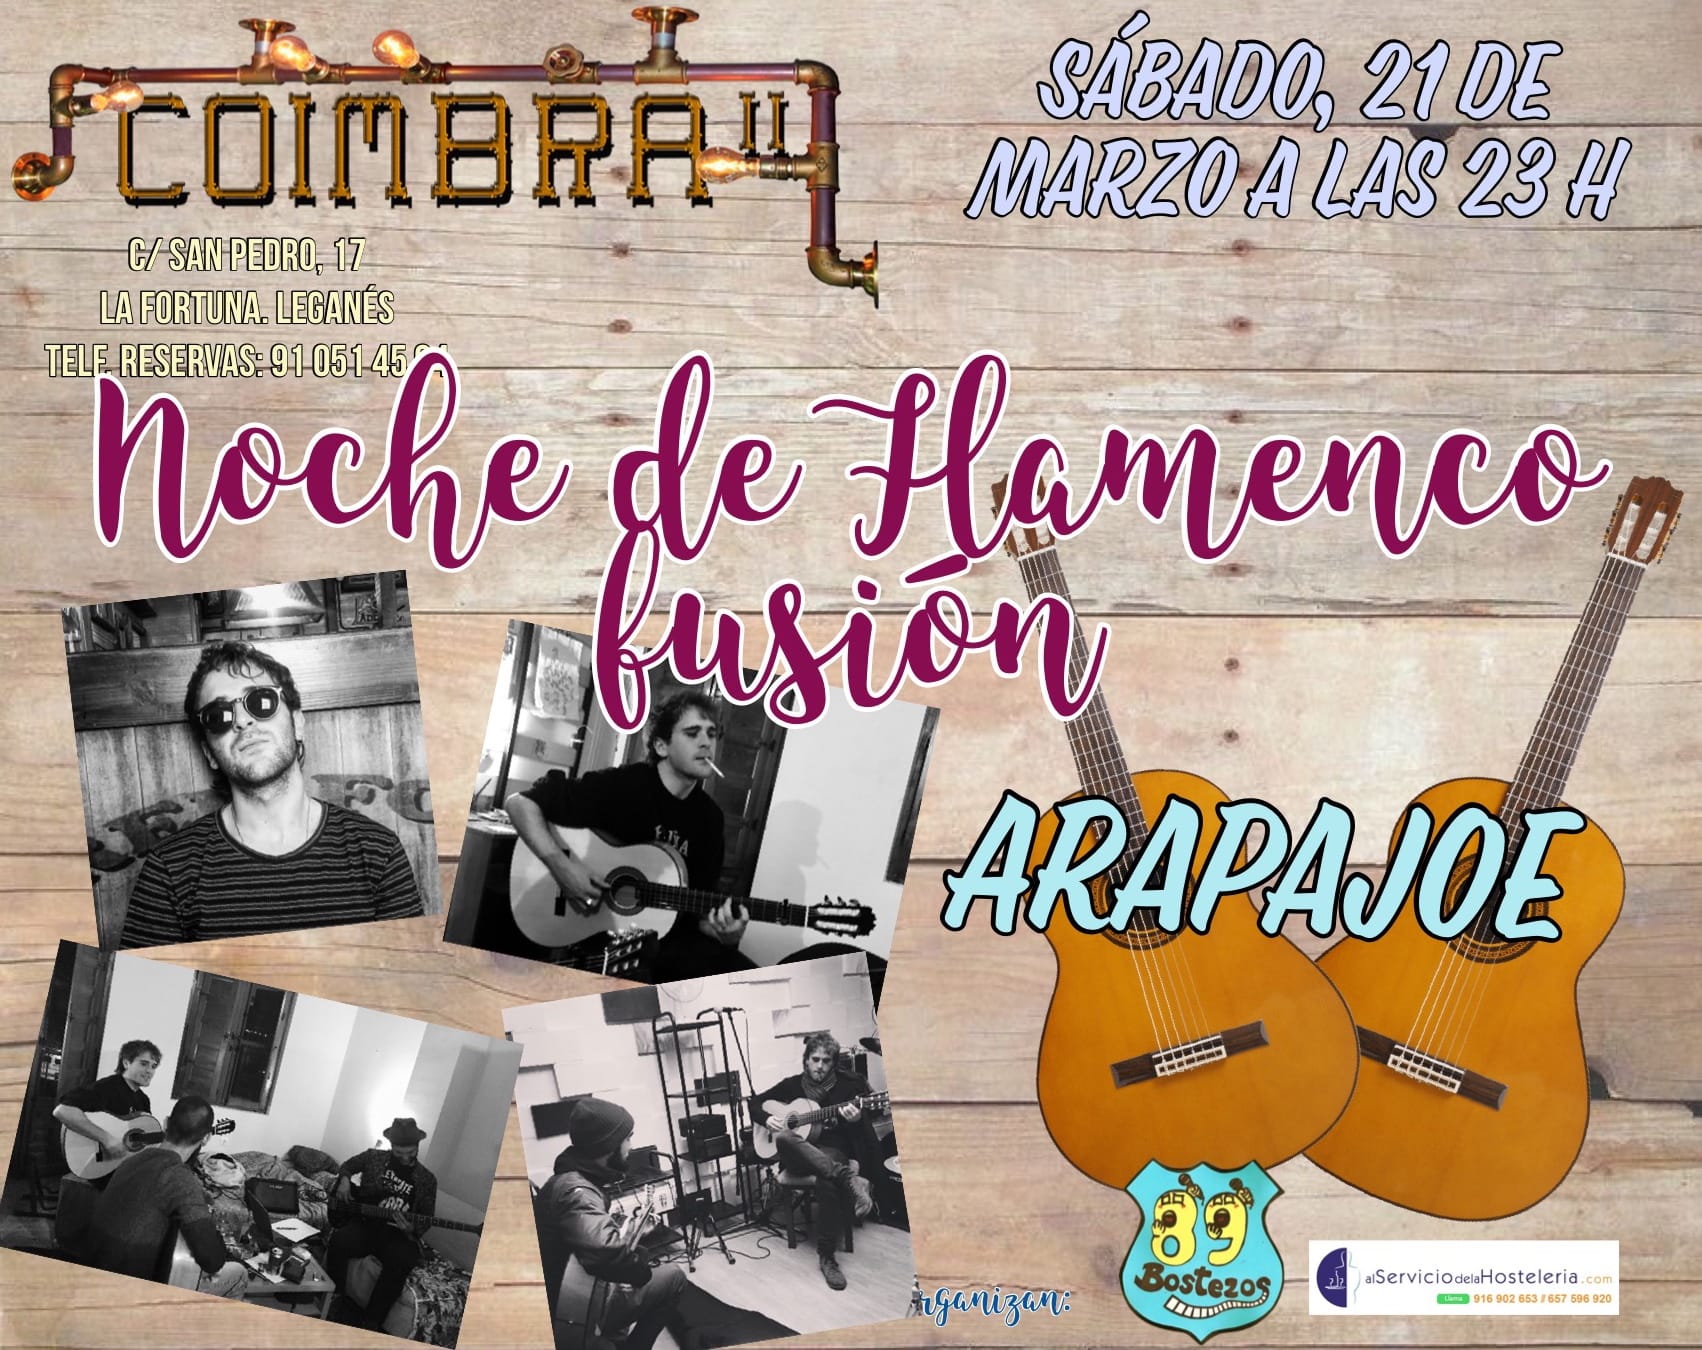 Noche de Flamenco Fusion con Arapajoe en Coimbra II - OCIO EN LEGANES